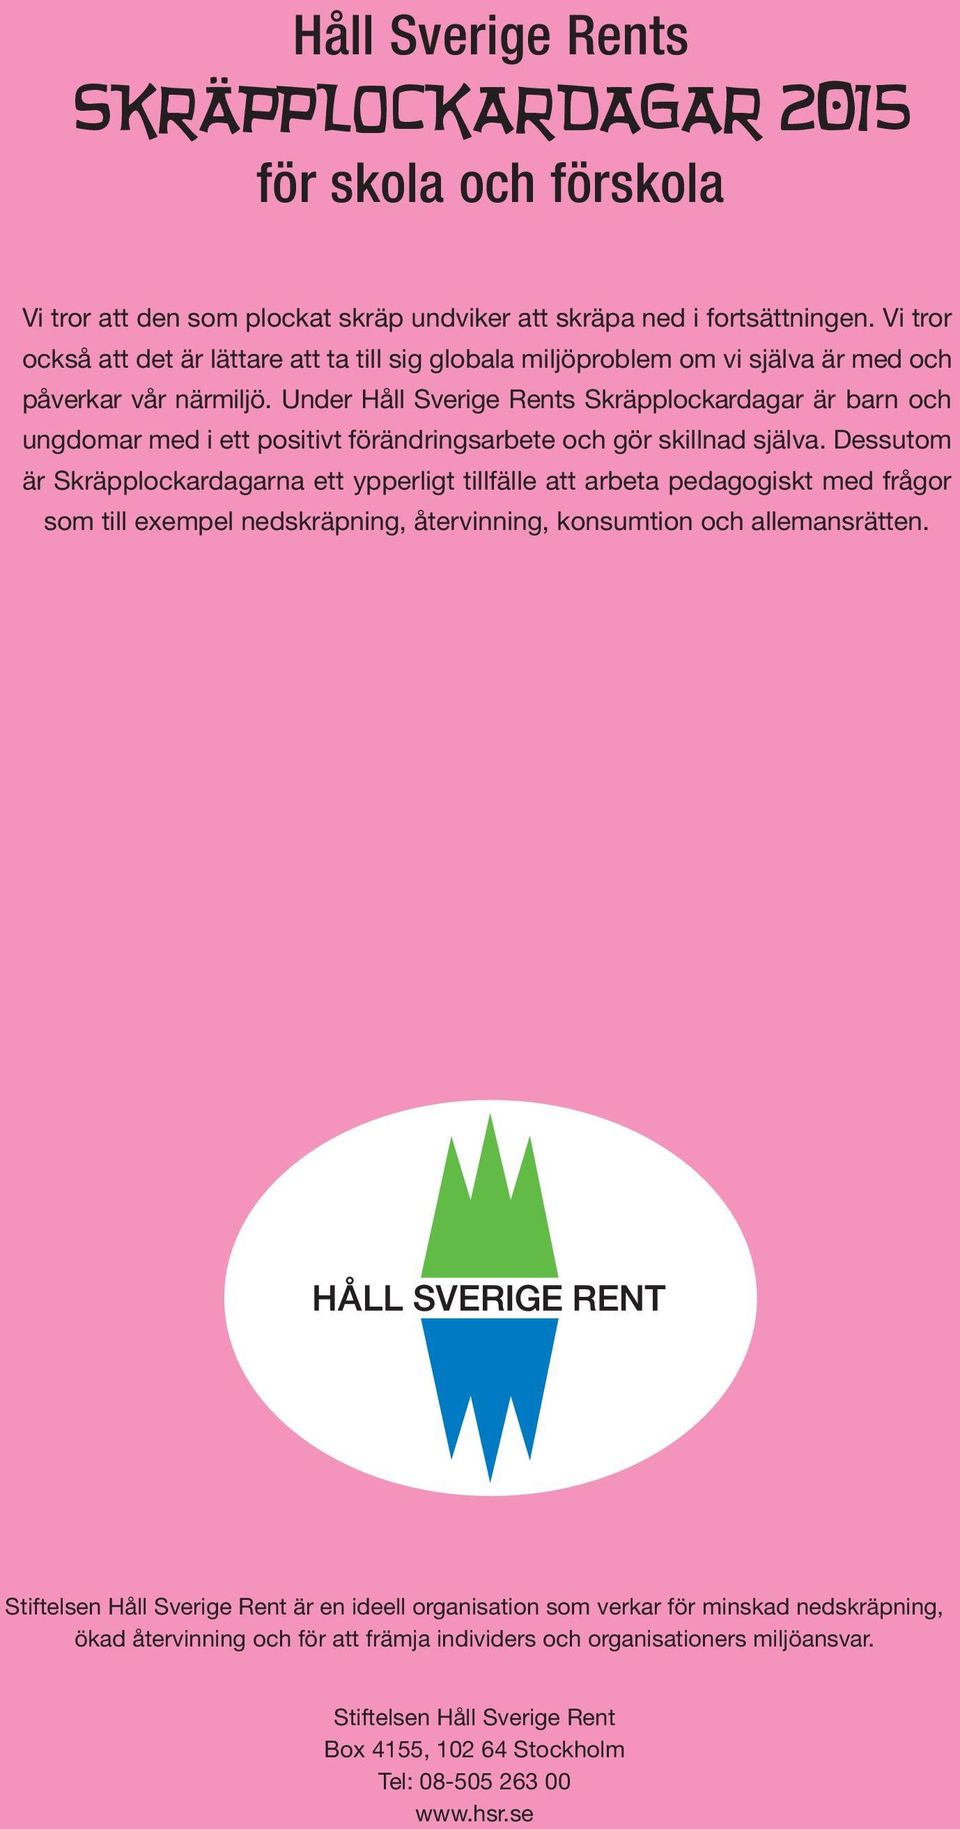 Under Håll Sverige Rents Skräpplockardagar är barn och ungdomar med i ett positivt förändringsarbete och gör skillnad själva.